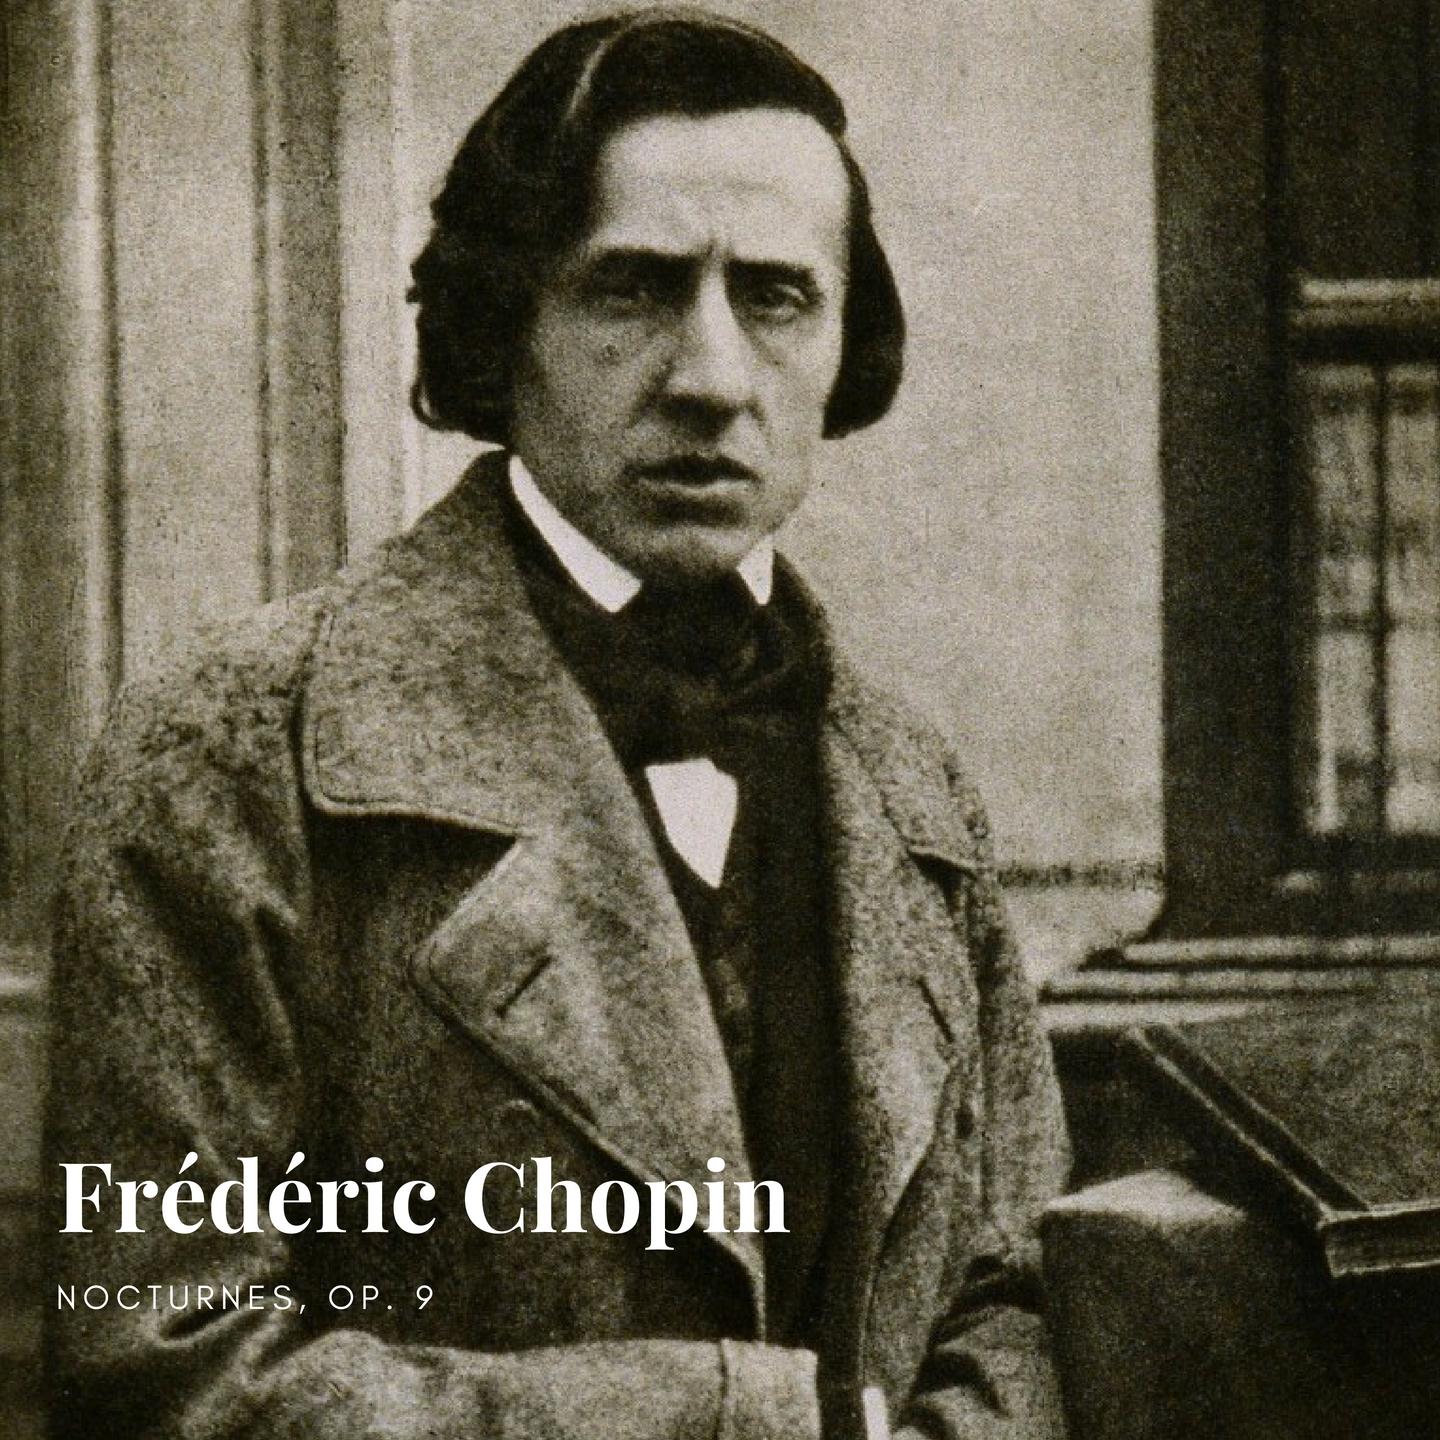 Fre de ric Chopin: Nocturnes, Op. 9